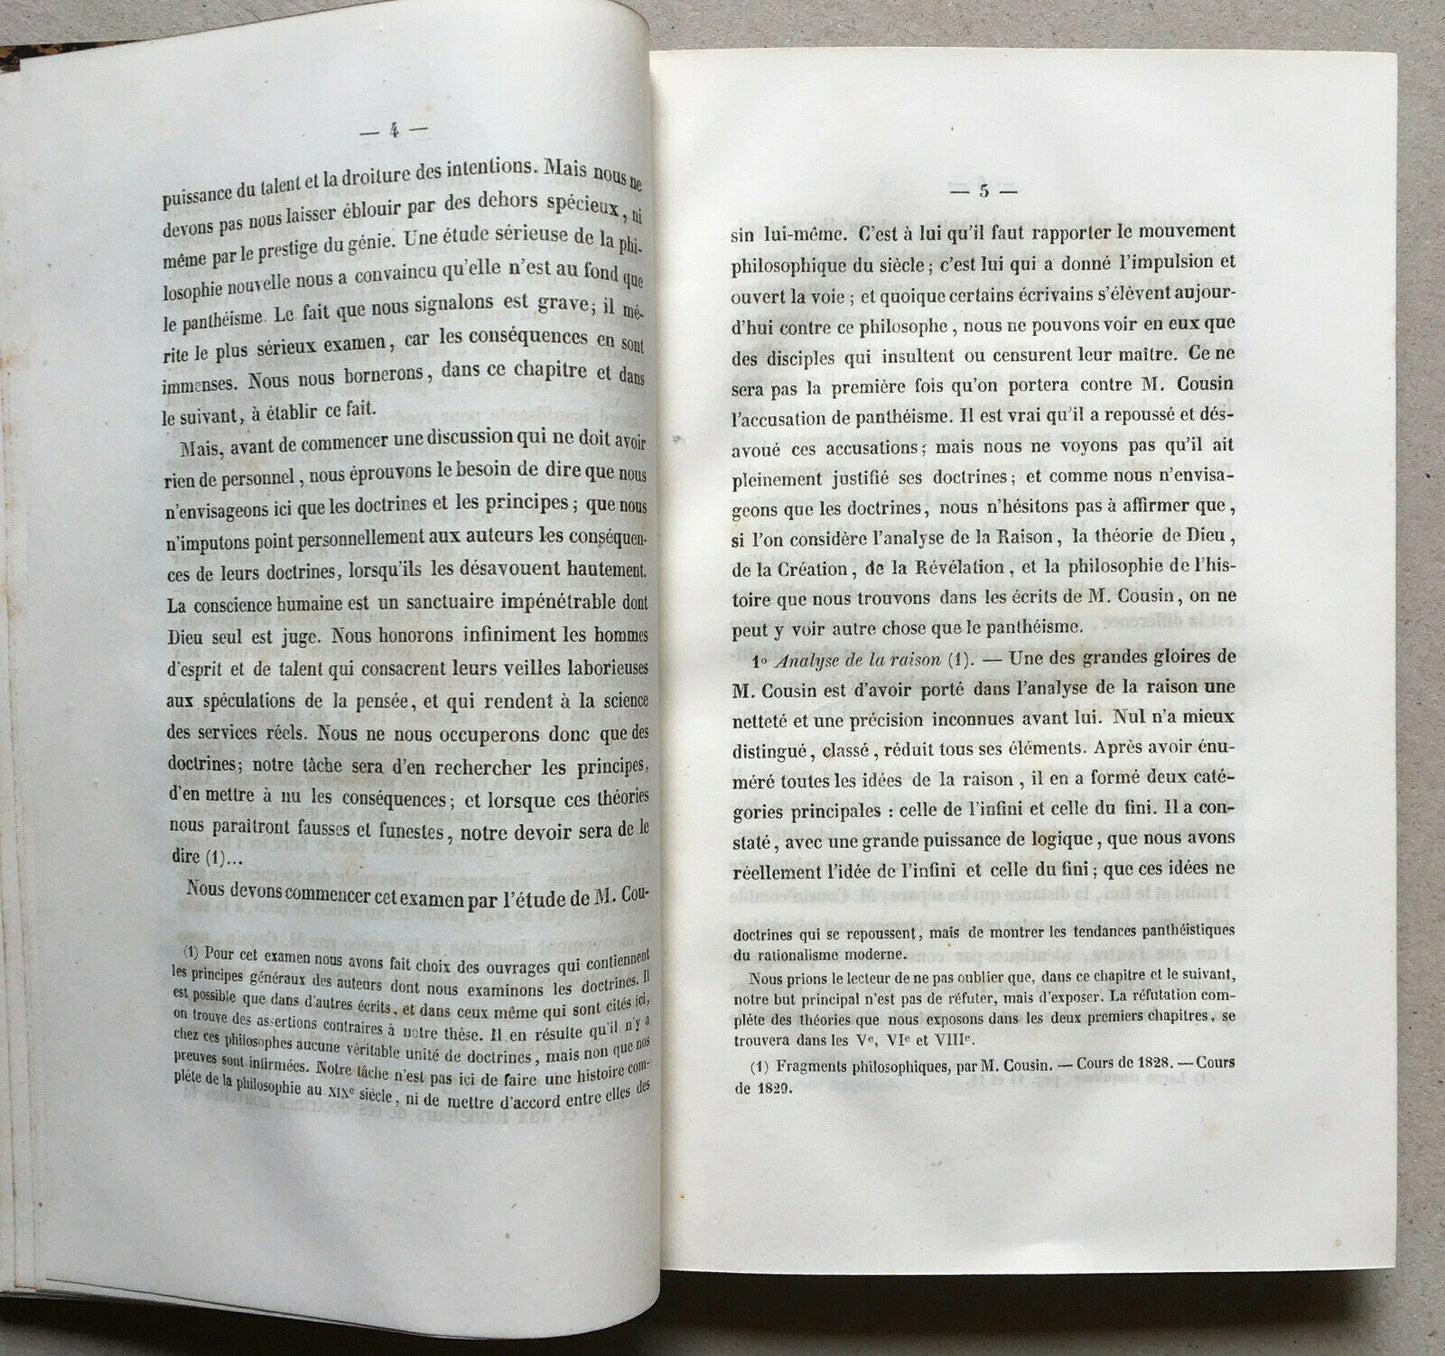 H. Maret — Essay on pantheism in modern societies — Sapia — 1840.